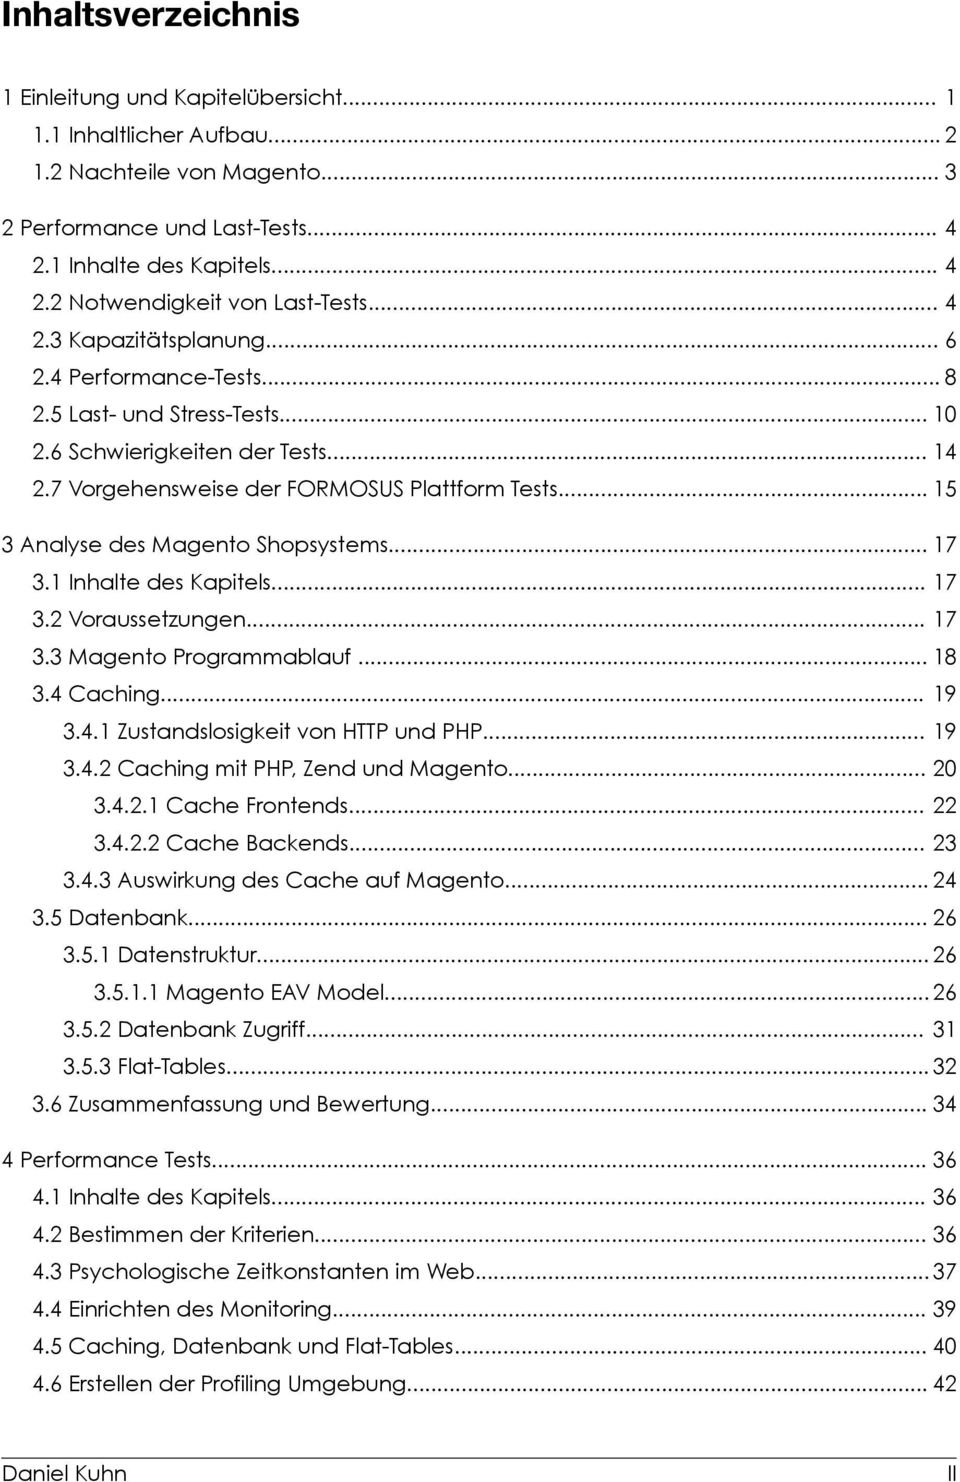 .. 5 3 Analyse des Magento Shopsystems... 7 3. Inhalte des Kapitels... 7 3.2 Voraussetzungen... 7 3.3 Magento Programmablauf... 8 3.4 Caching... 9 3.4. Zustandslosigkeit von HTTP und PHP... 9 3.4.2 Caching mit PHP, Zend und Magento.